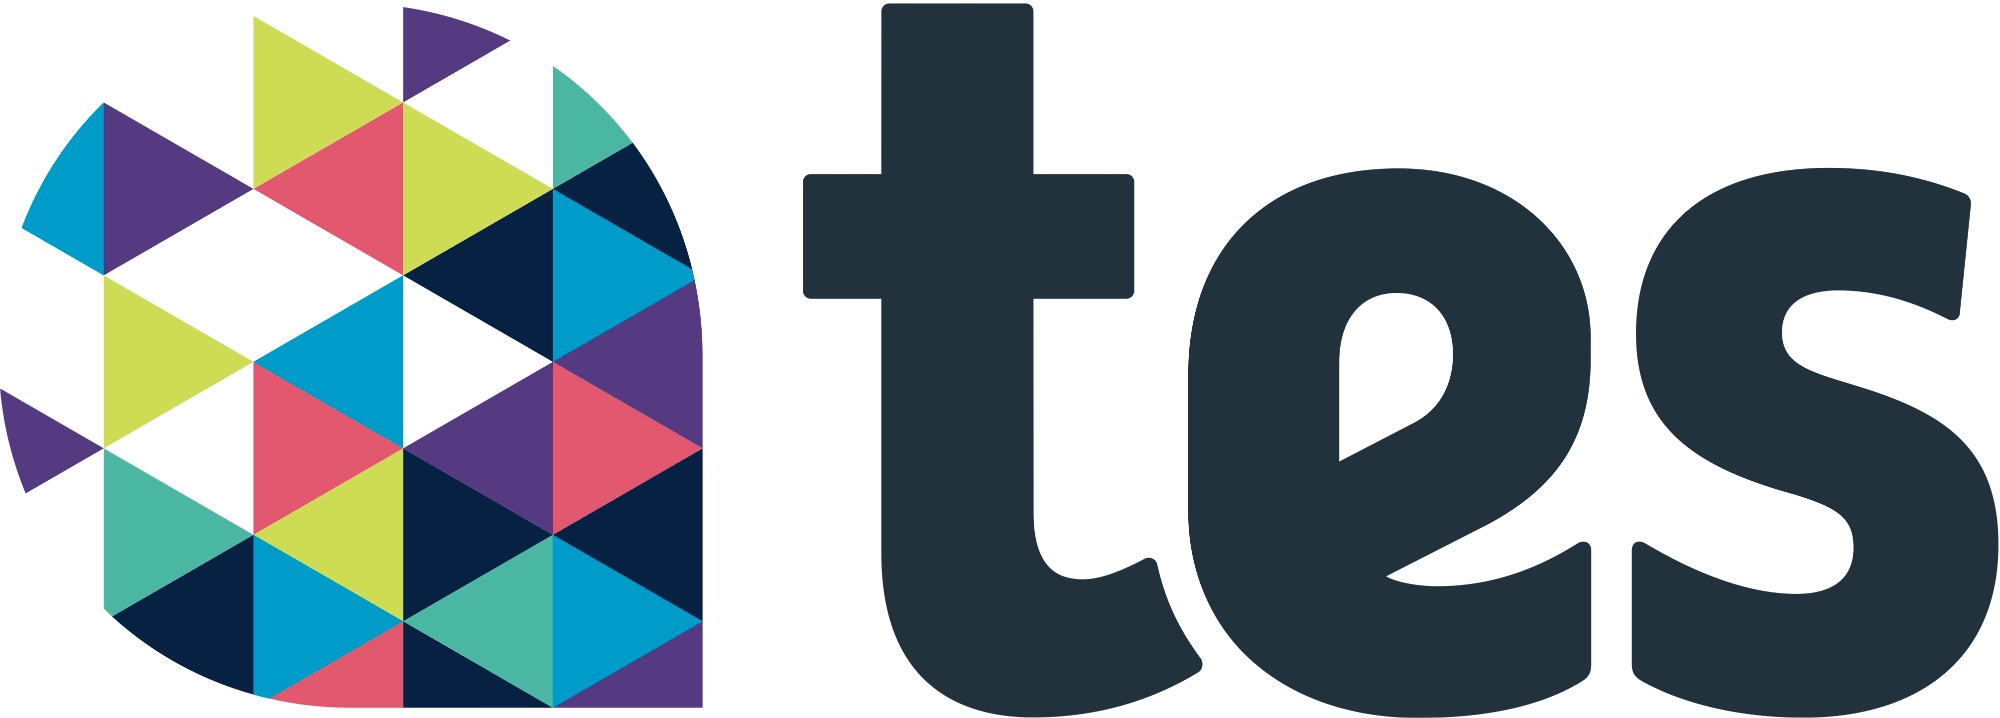 Image of TES logo